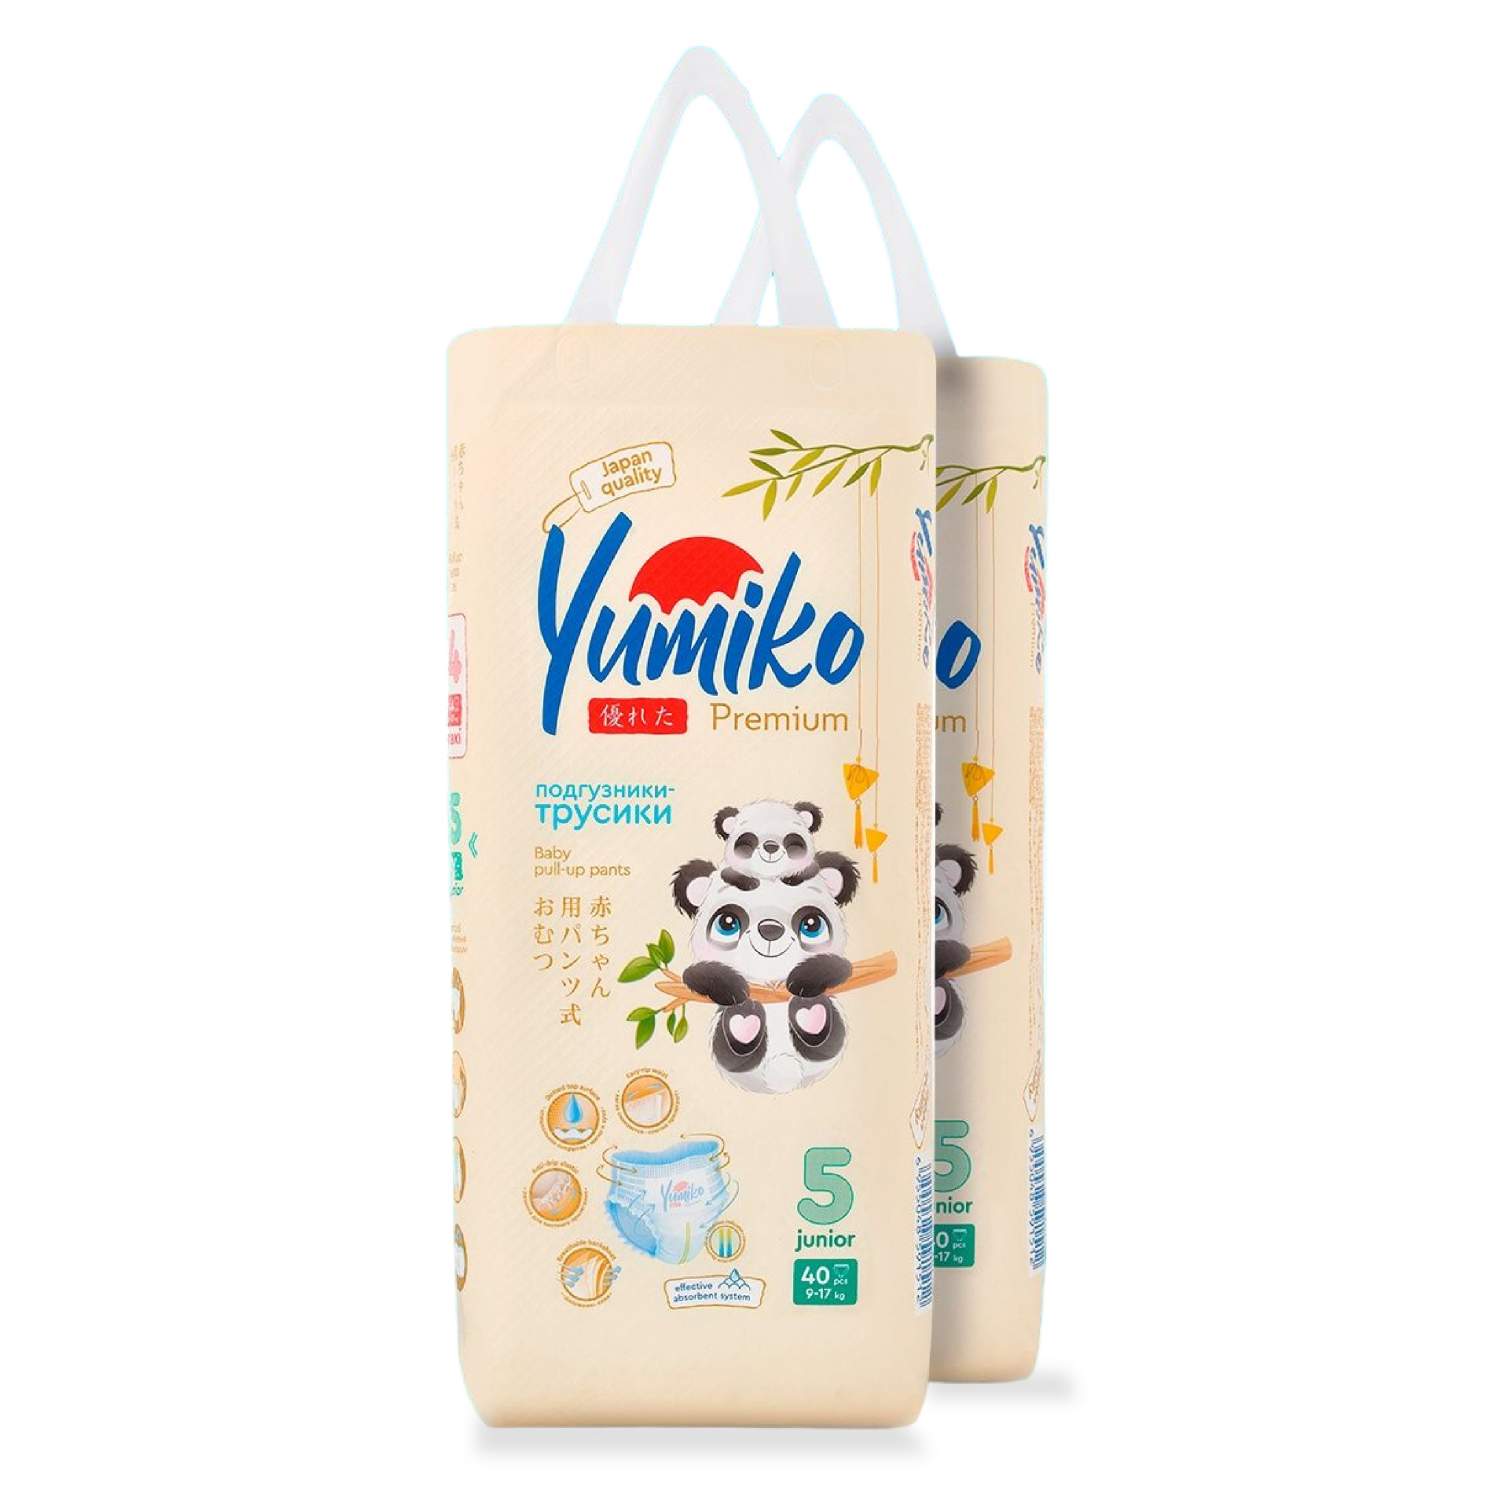 Купить трусики-подгузники Yumiko 5 XL (Junior), 9-17 кг 80 шт (2 упаковки  по 40 штук), цены на Мегамаркет | Артикул: 600008786137